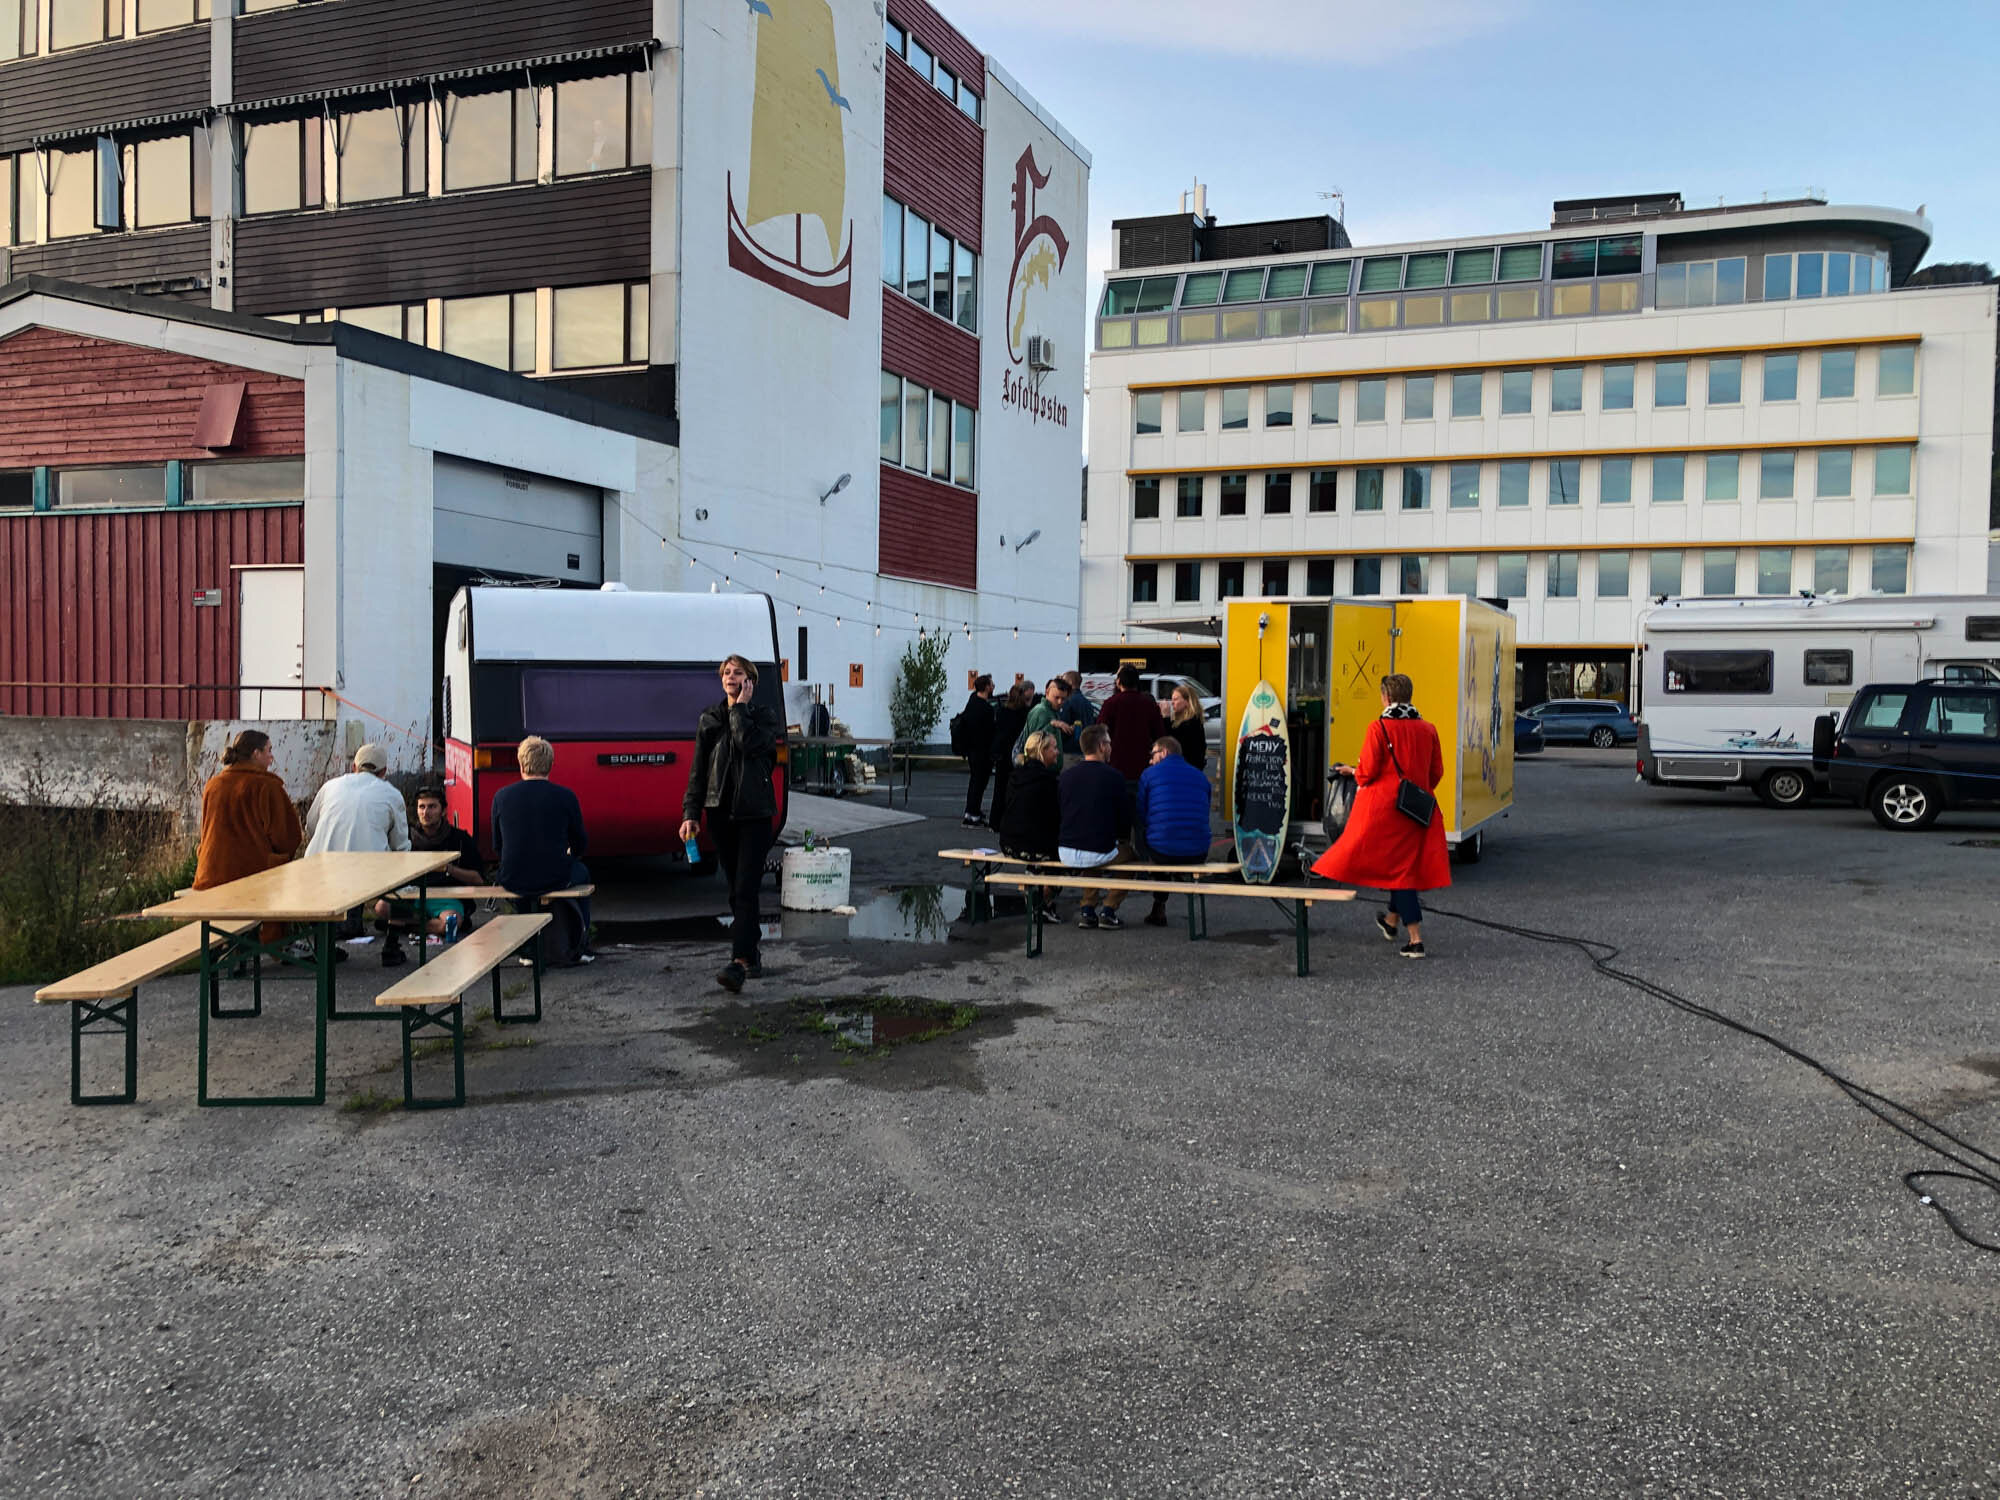  Åpning LIAF 2019. Campingvognen er del sosiale kunstprosjektet  Something for something  (2019) av Katerina Sedá. Foto: Hilde Sørstrøm 